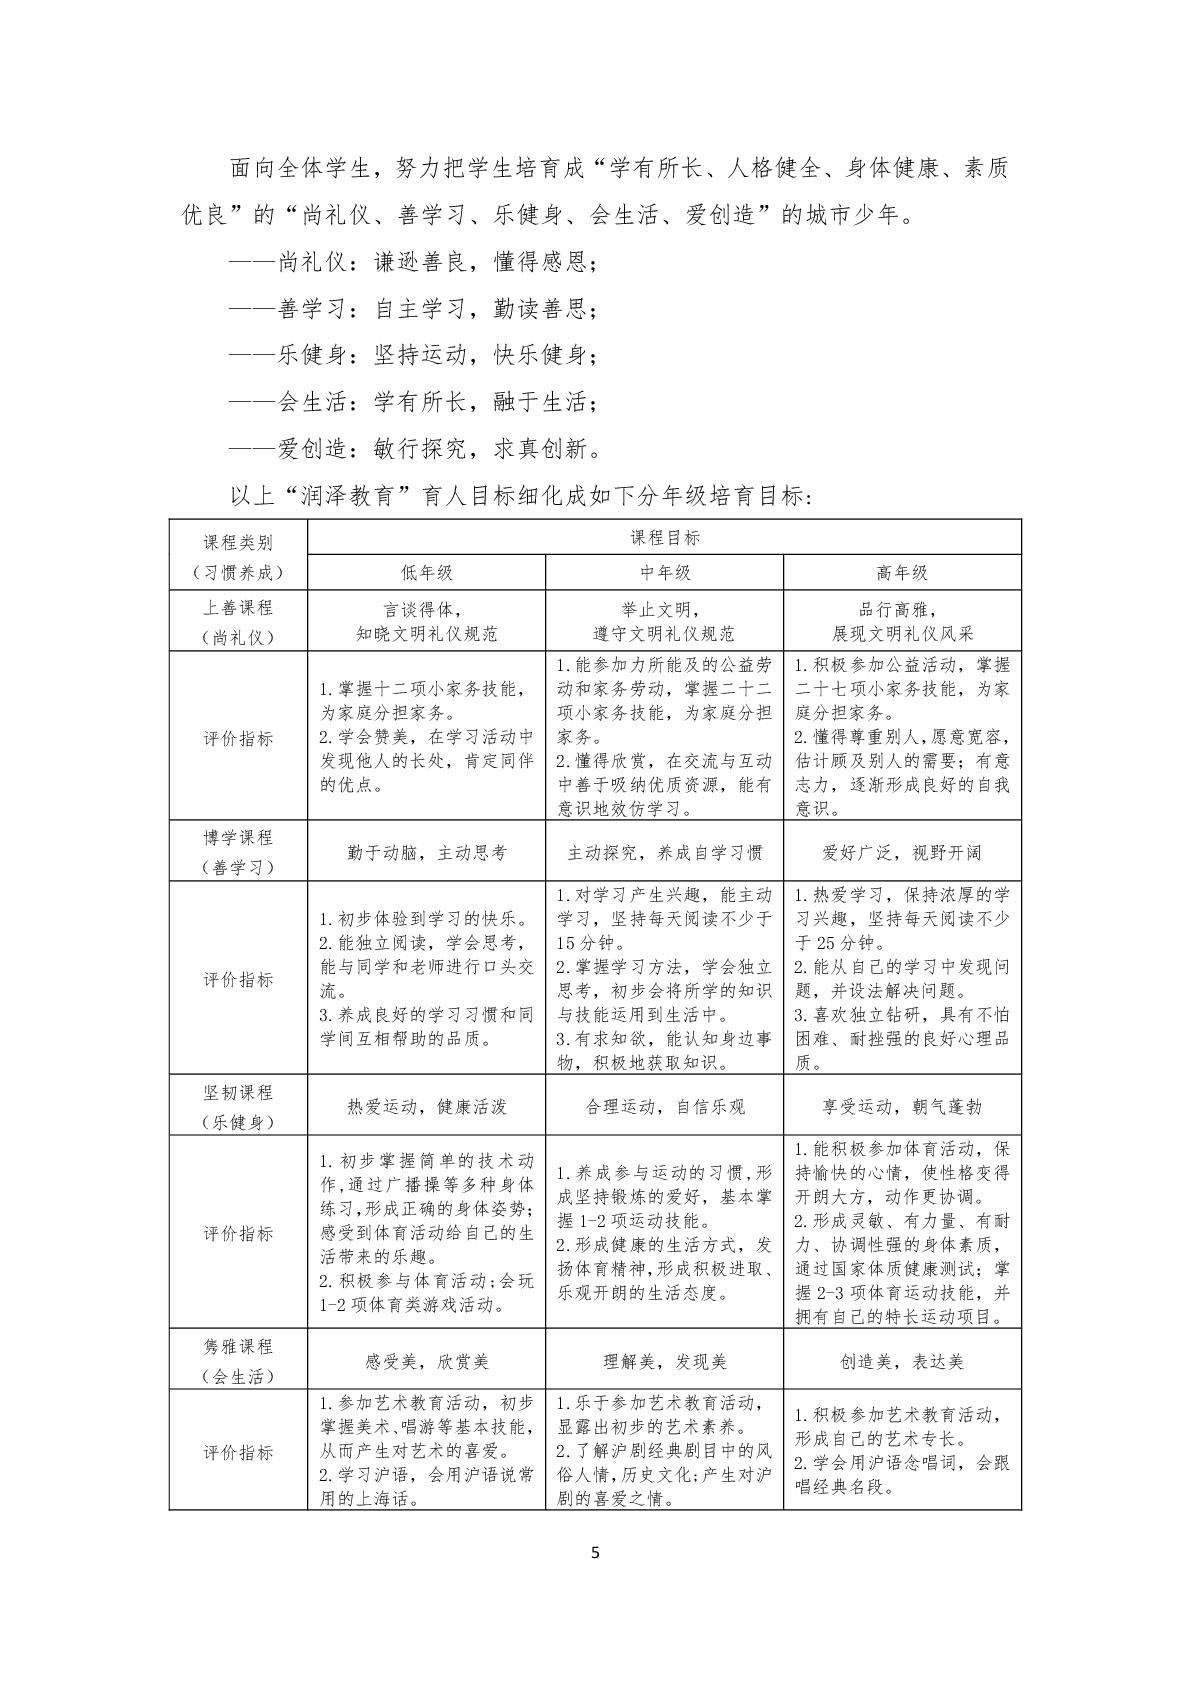 2.上海市嘉定区清水路小学2020学年度课程计划-005.jpg